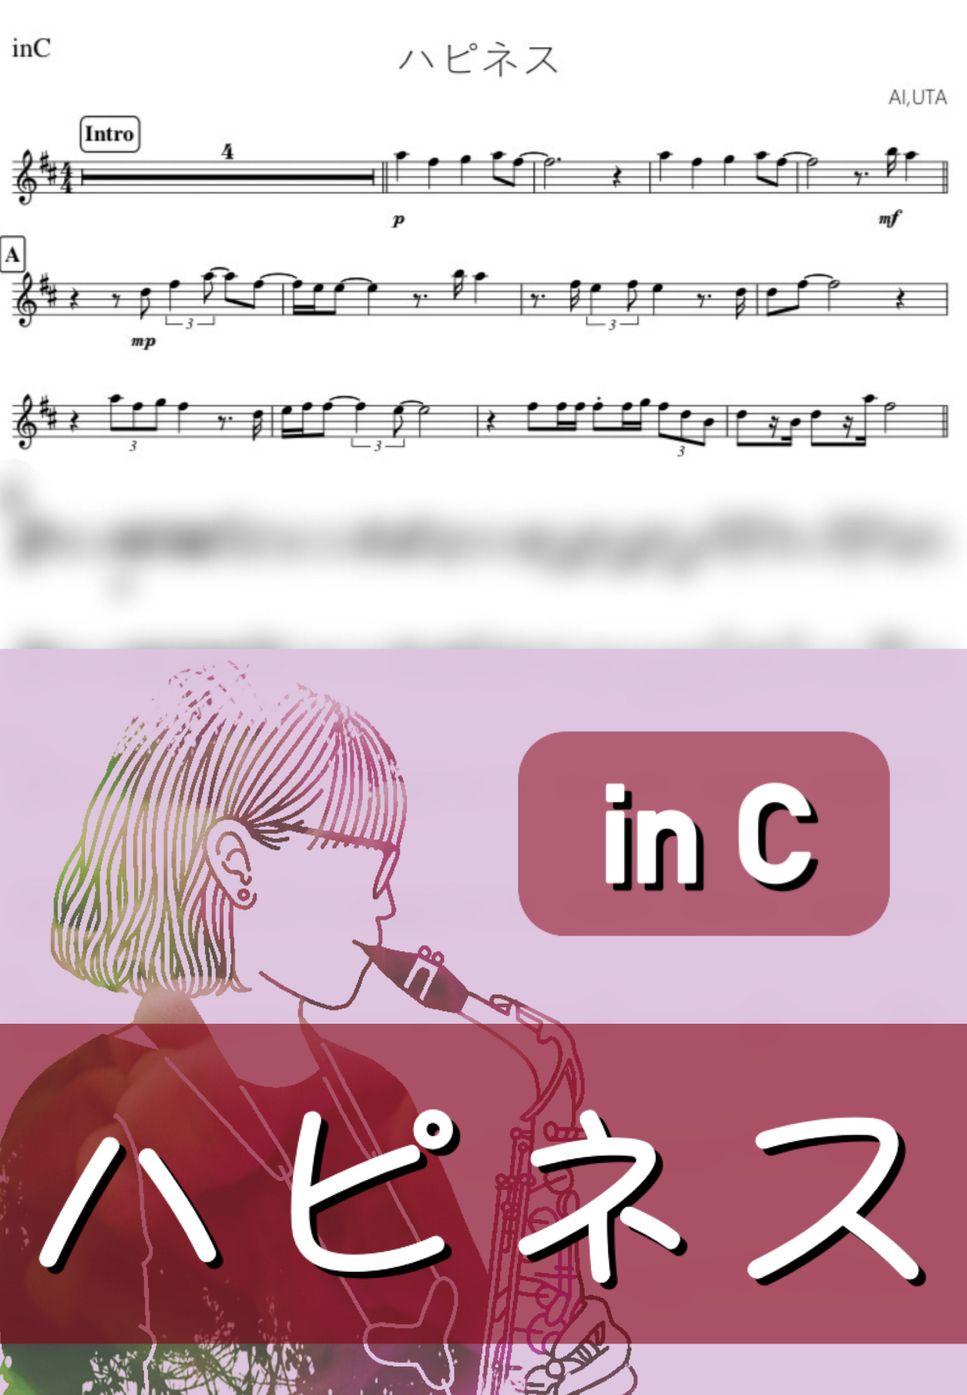 AI - ハピネス (C) by kanamusic